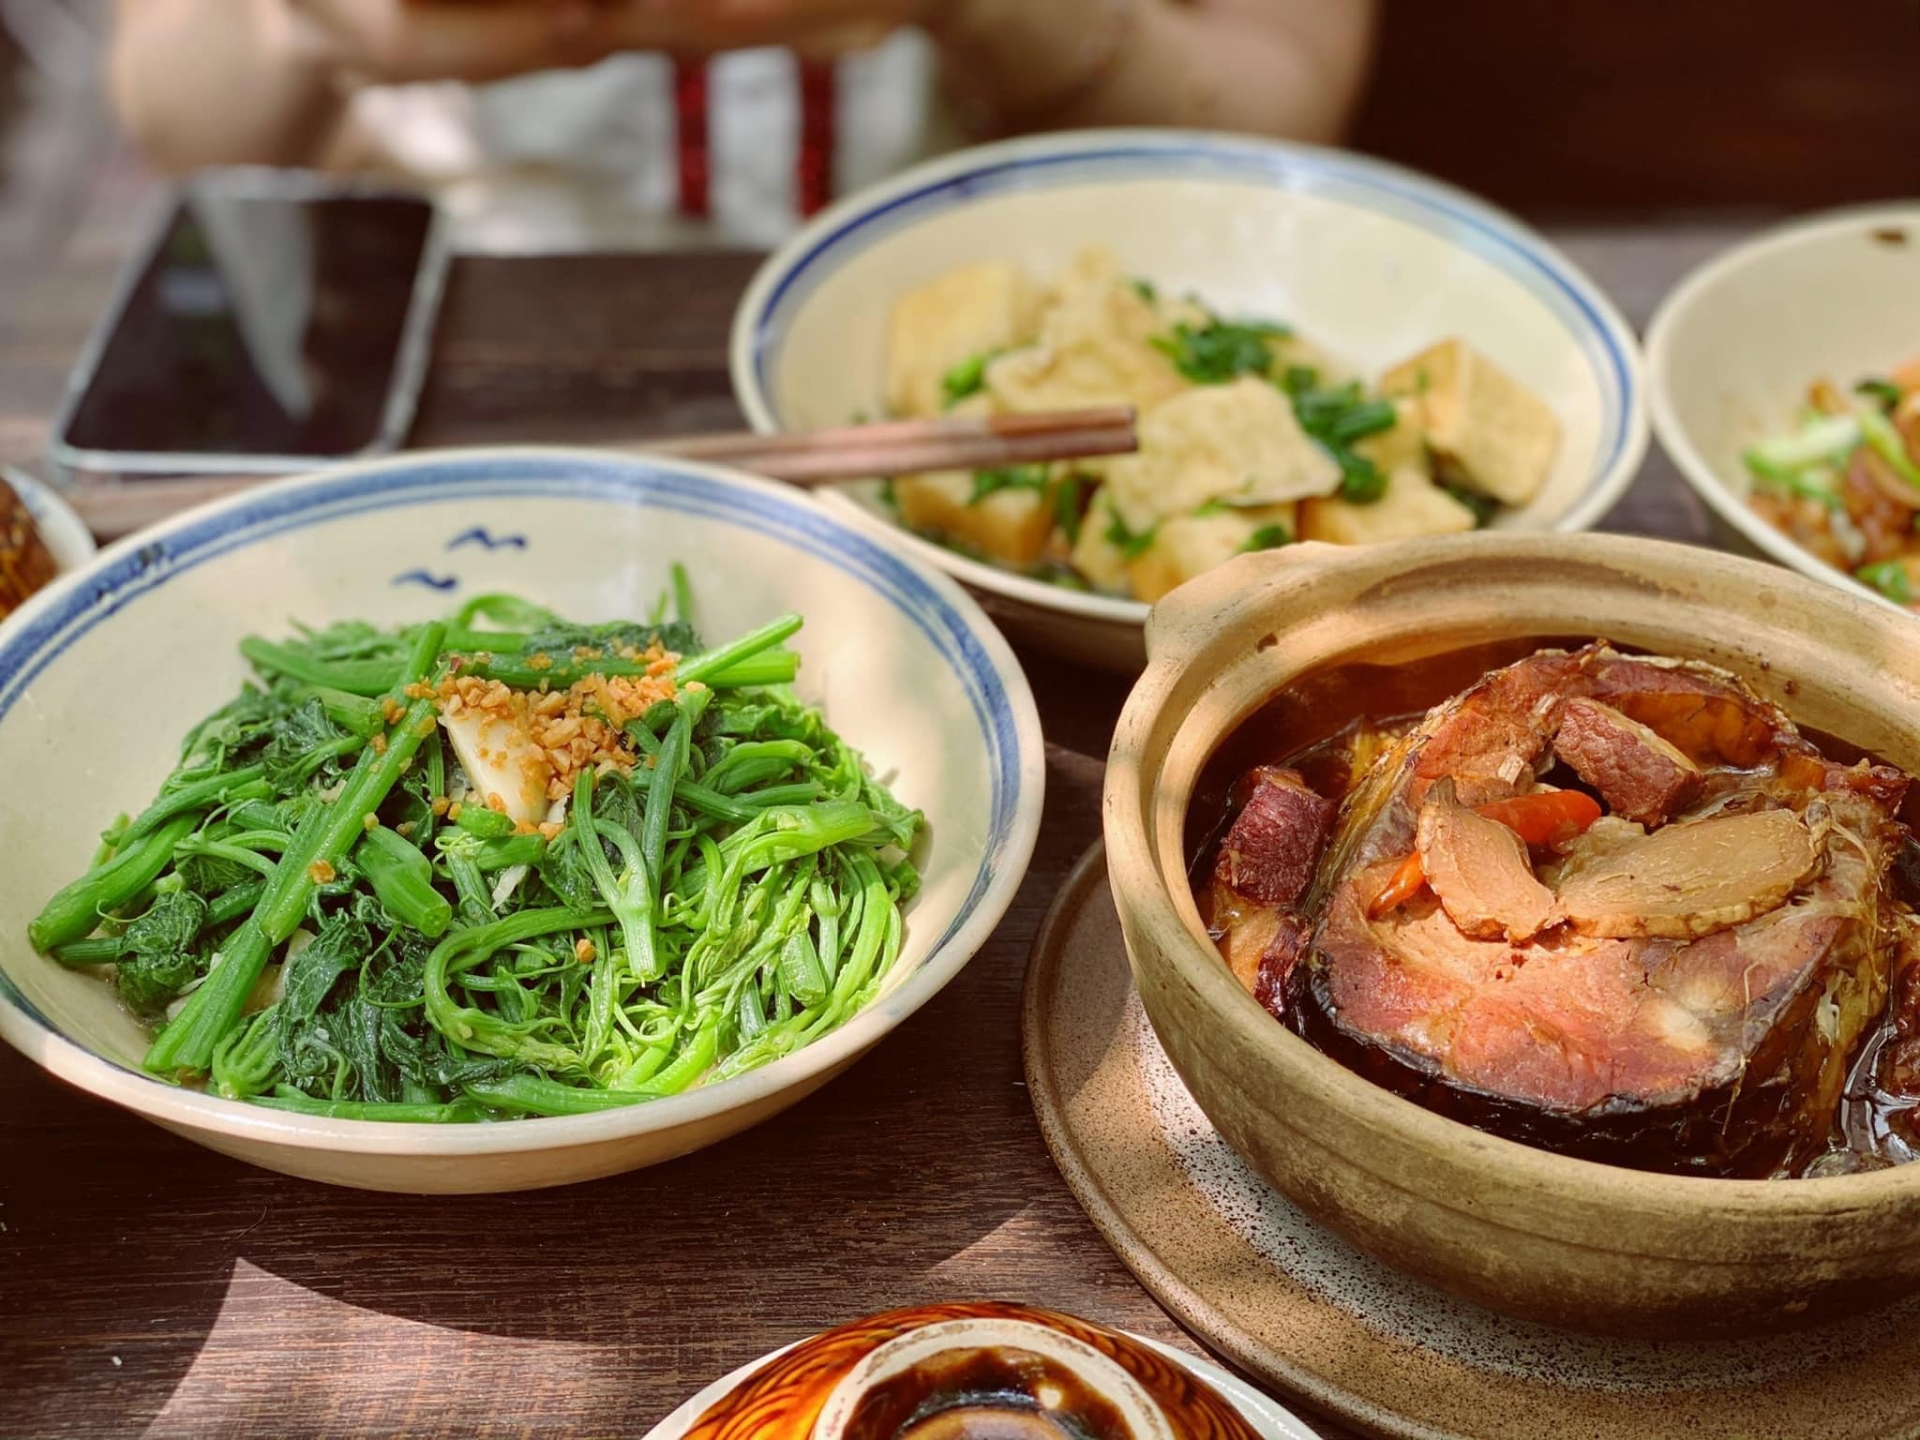 Nét đẹp và sự khác biệt của văn hóa ẩm thực 3 miền Bắc - Trung - Nam - Ảnh 2